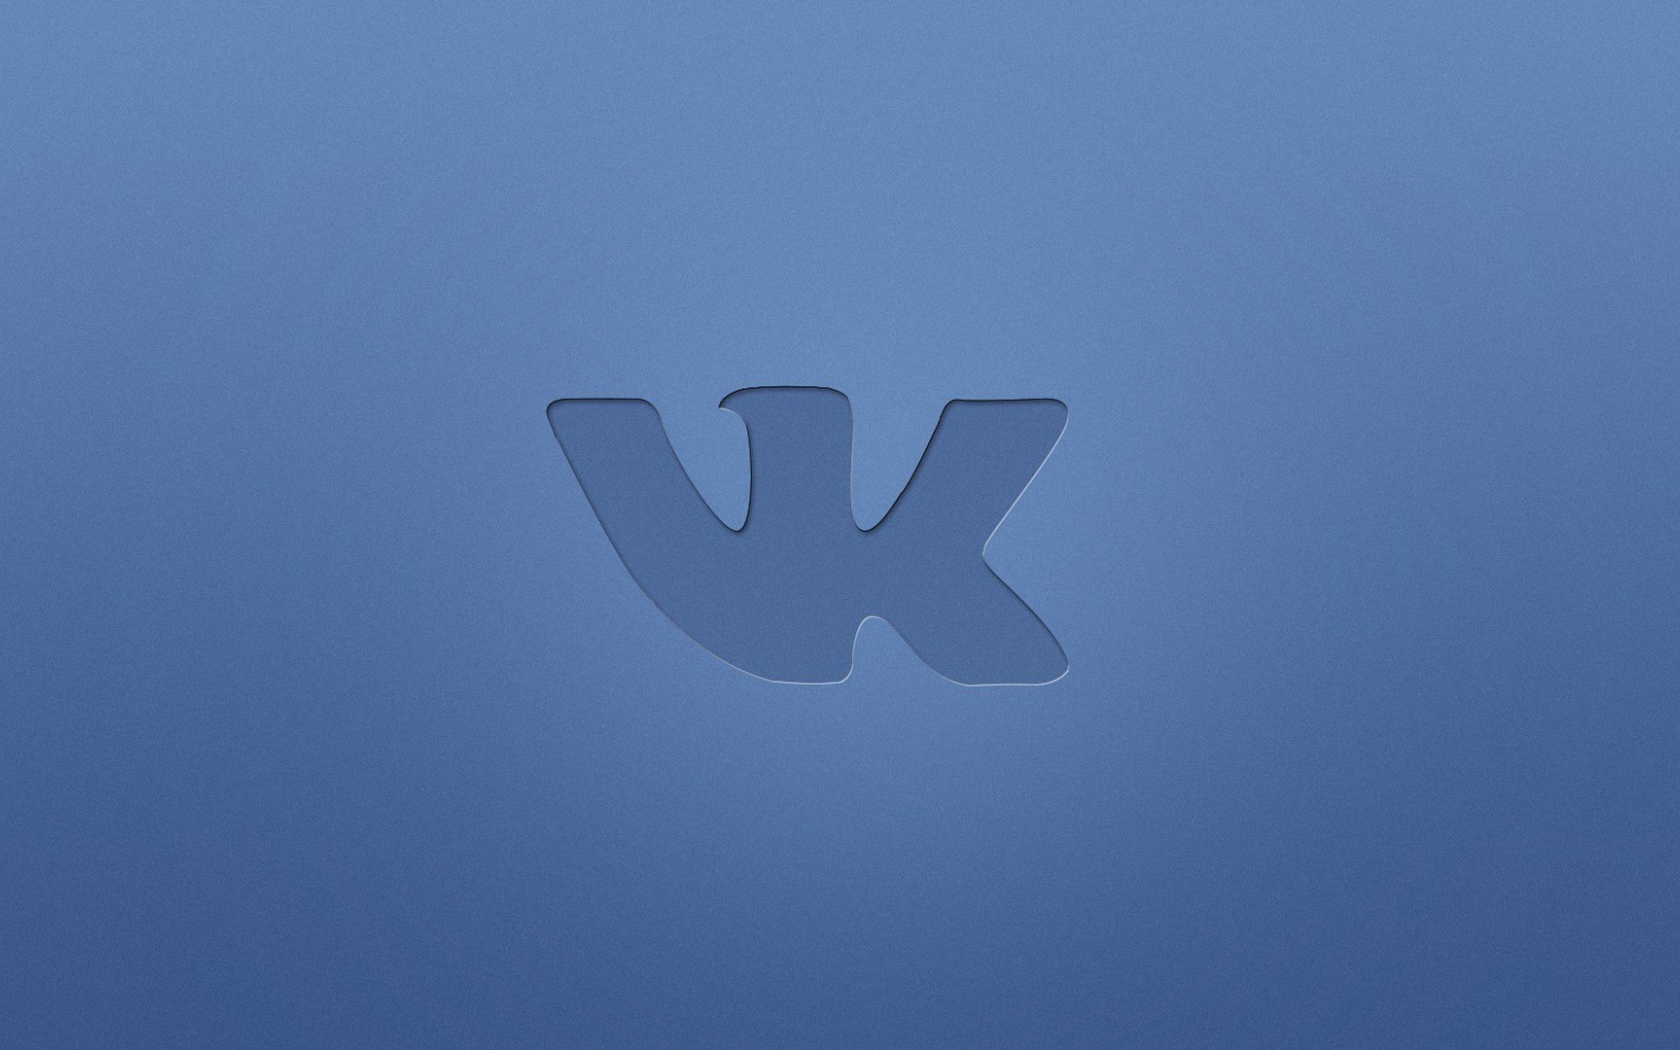 Логотип социальной сети Вконтакте